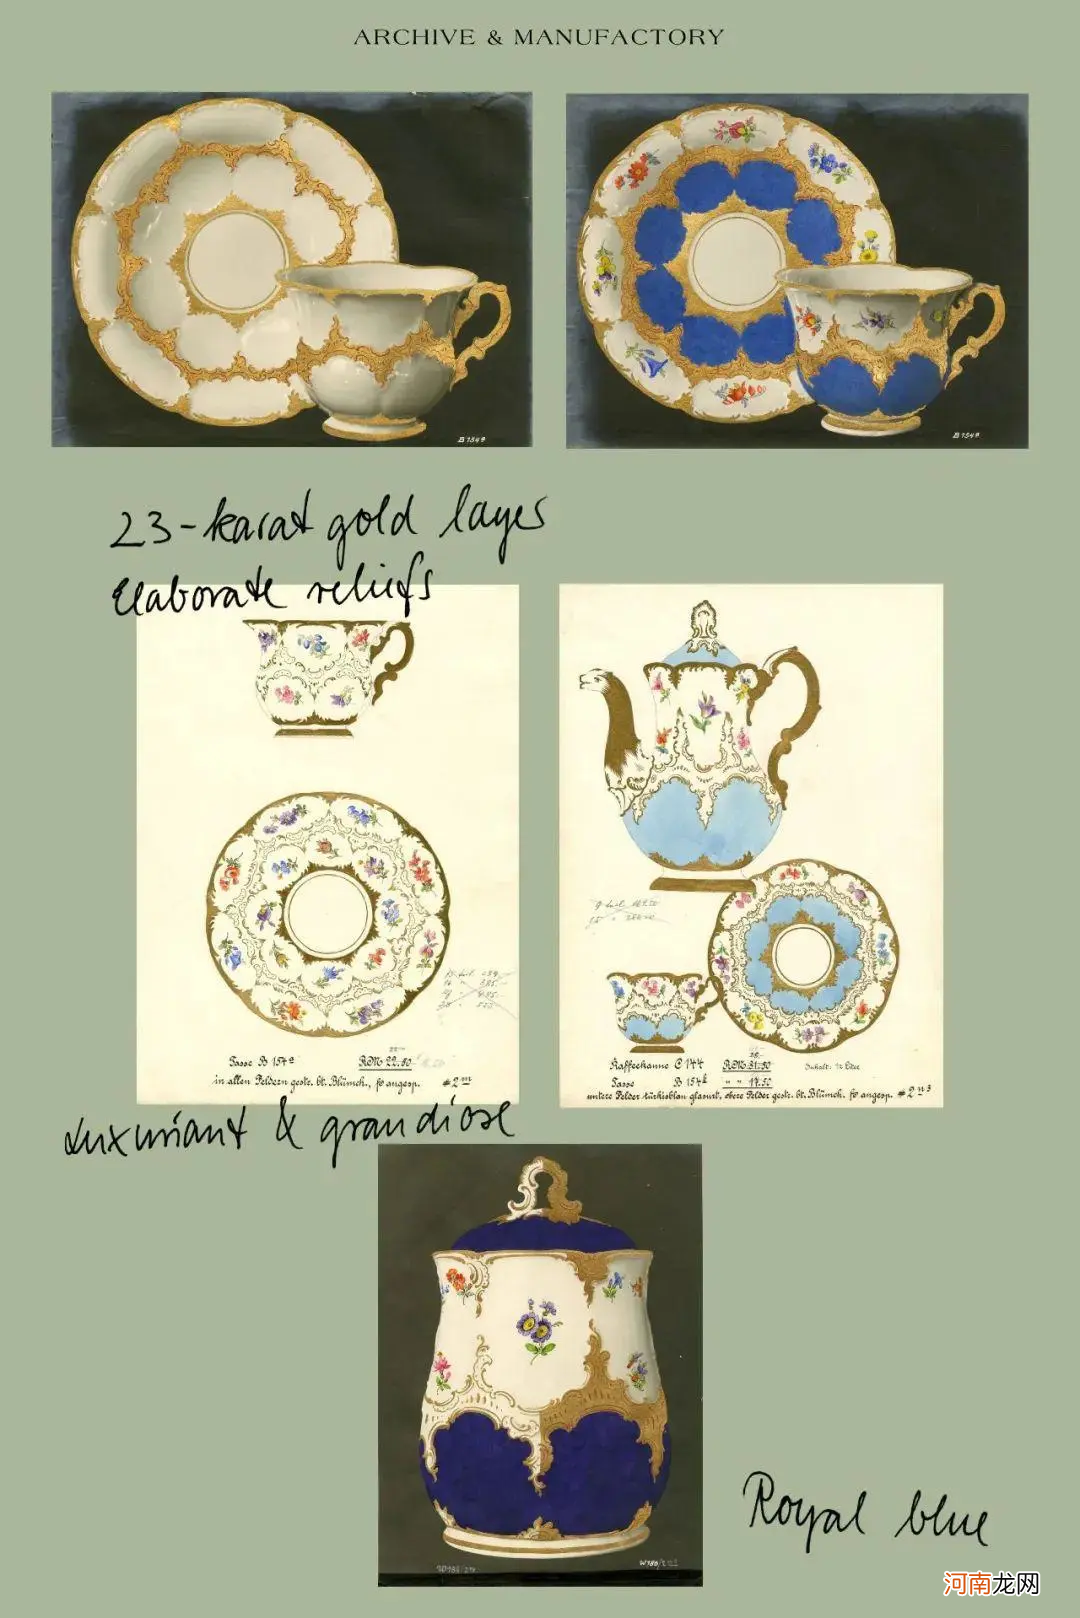 梅森瓷器是欧瓷中的“白色黄金” 梅森瓷器等级划分